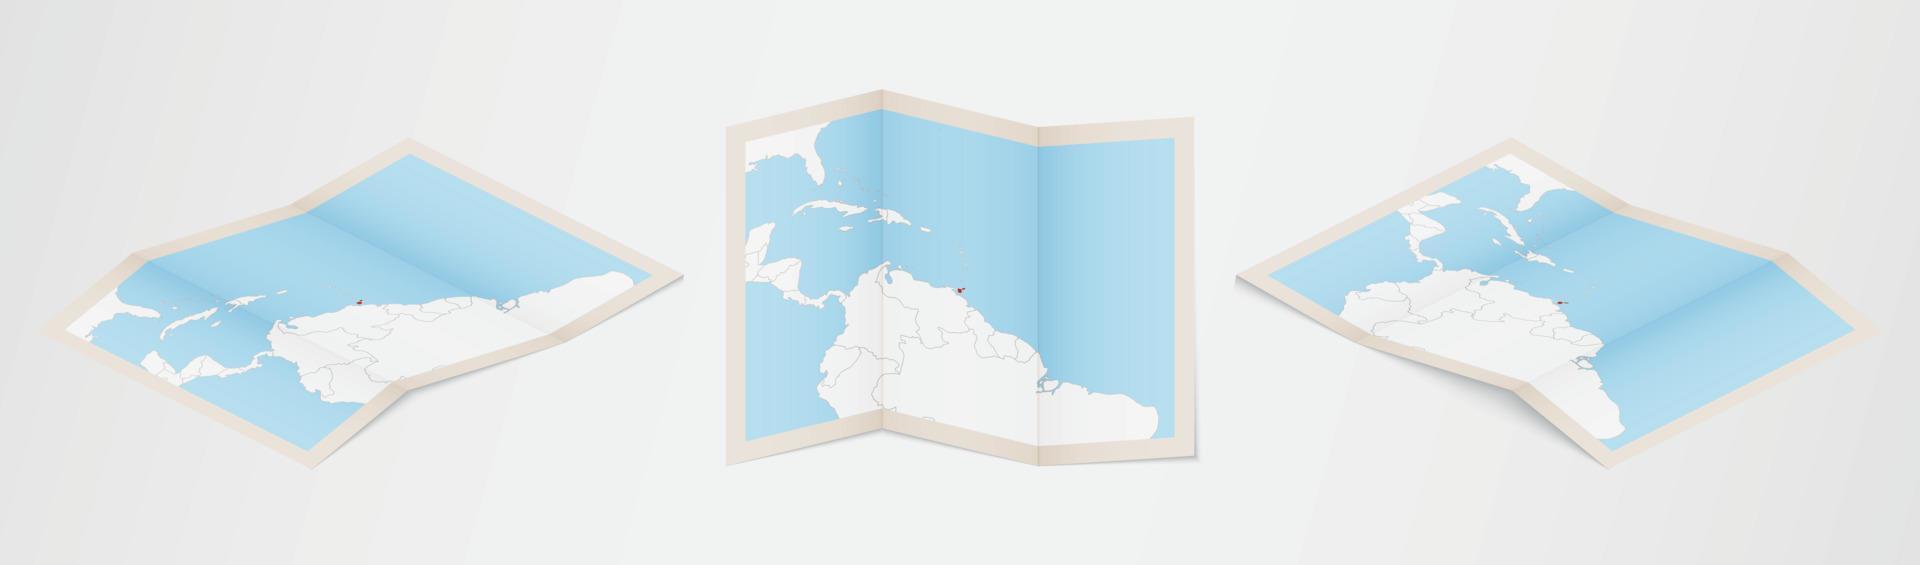 Faltkarte von Trinidad und Tobago in drei verschiedenen Versionen. vektor